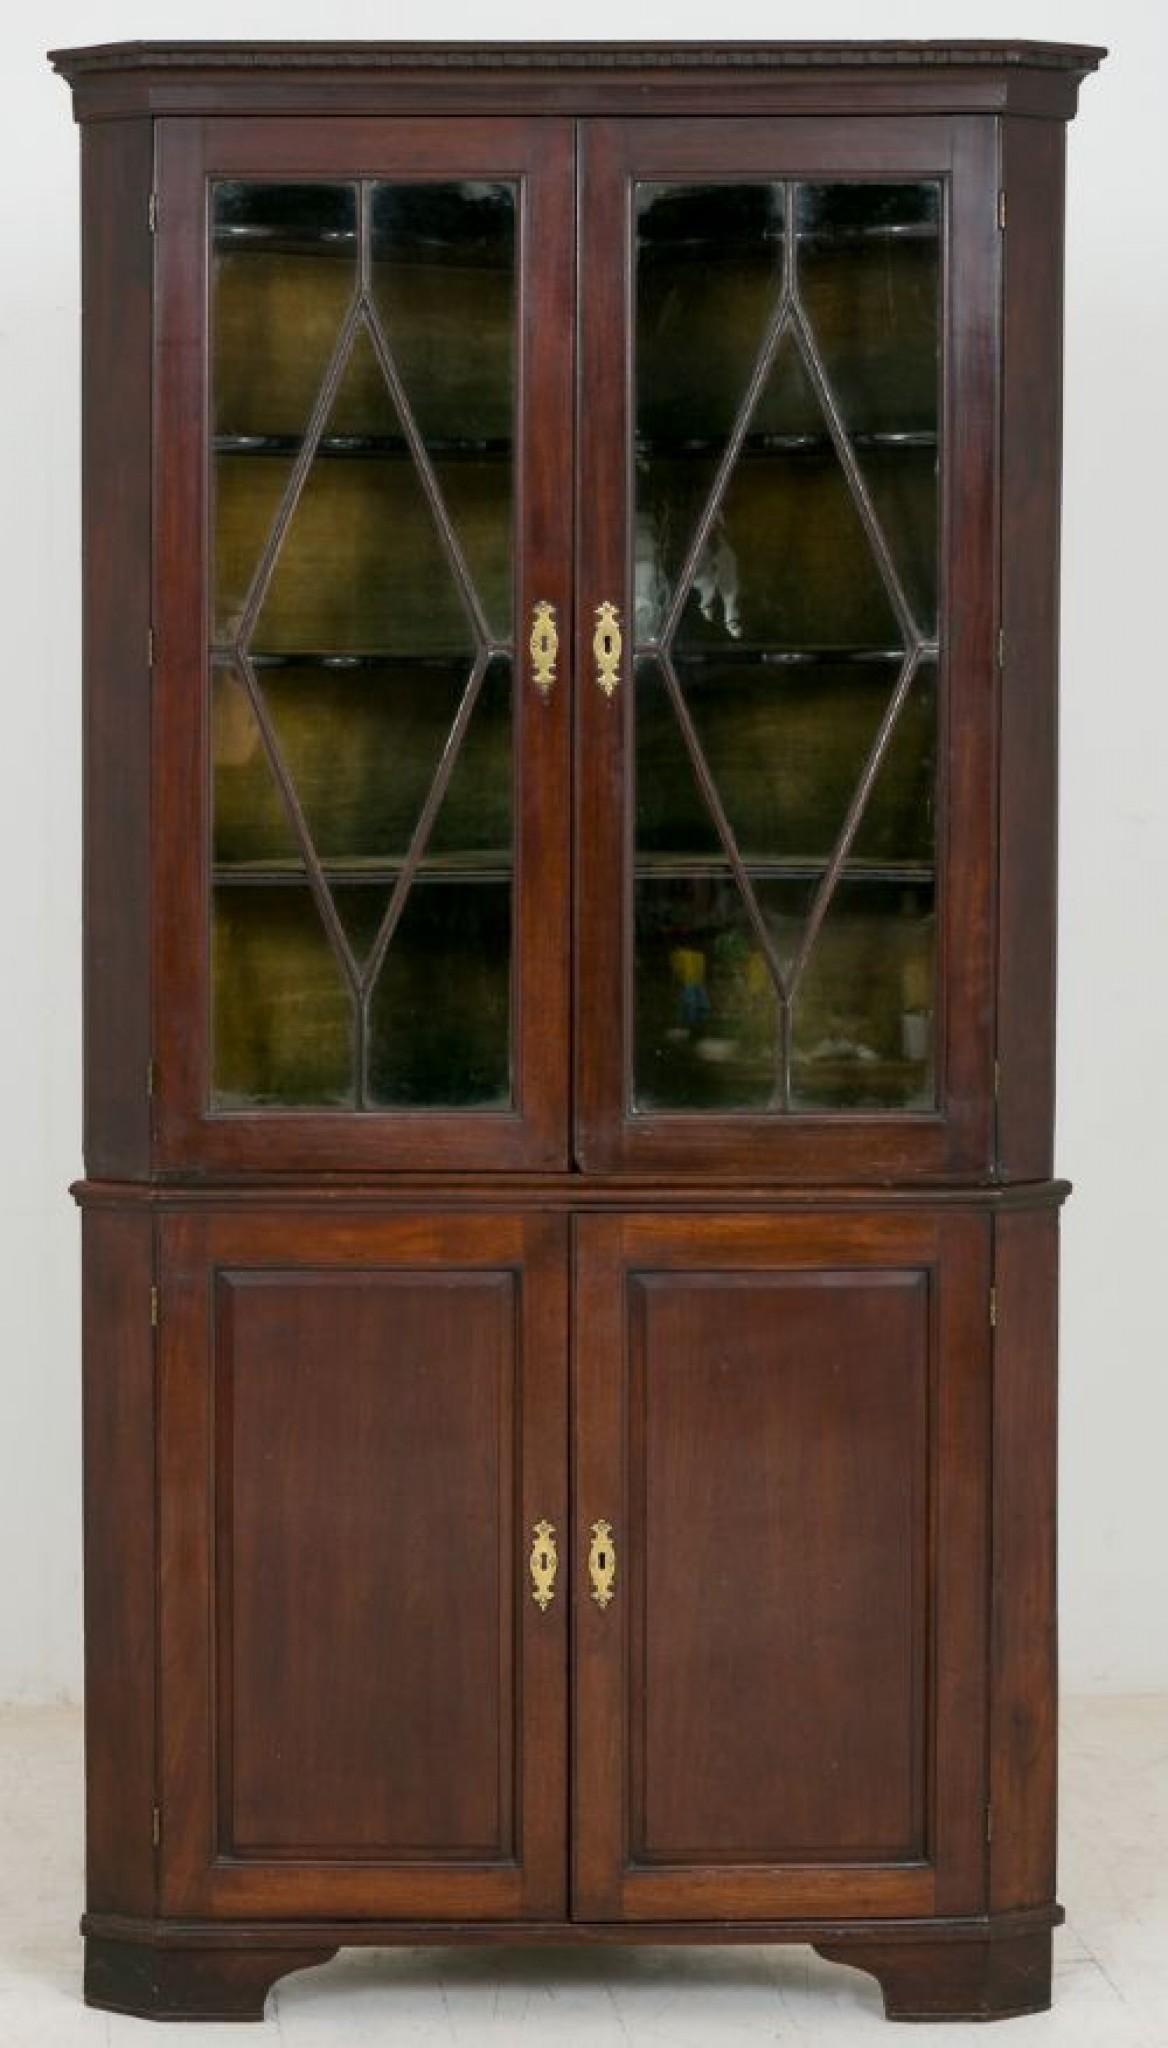 Cabinet d'angle George II en acajou émaillé.
Circa 1750
La partie inférieure est dotée de deux portes à panneaux à champs et la partie supérieure d'une paire de portes vitrées astragales révélant de merveilleuses étagères en forme (typiquement du